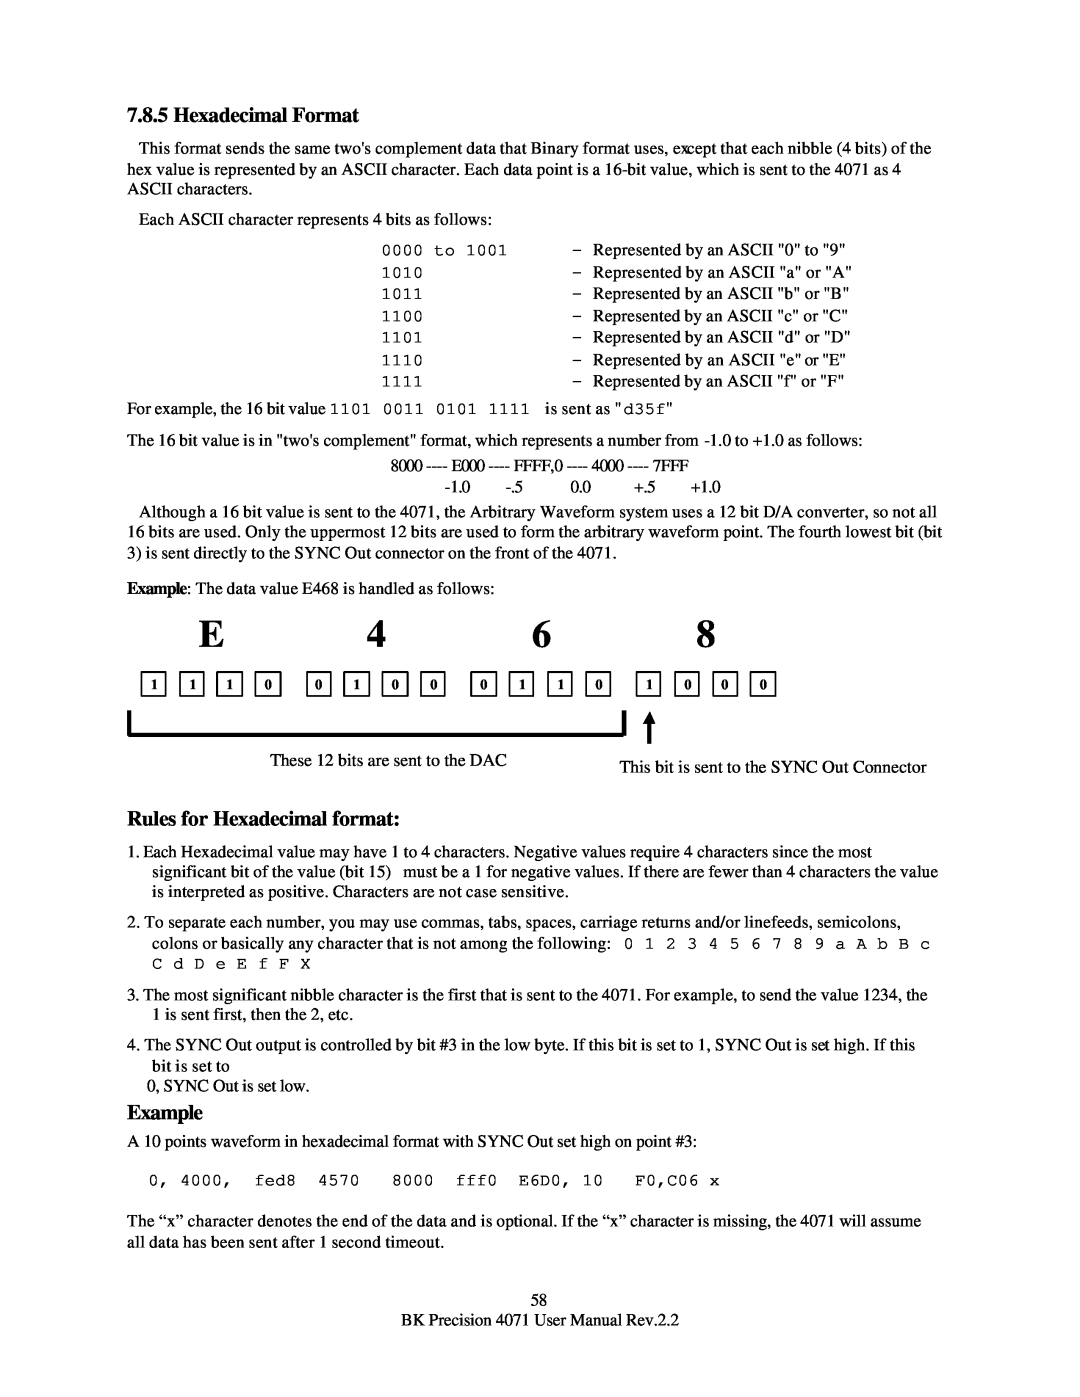 B&K 4071 user manual Hexadecimal Format, Rules for Hexadecimal format, Example 